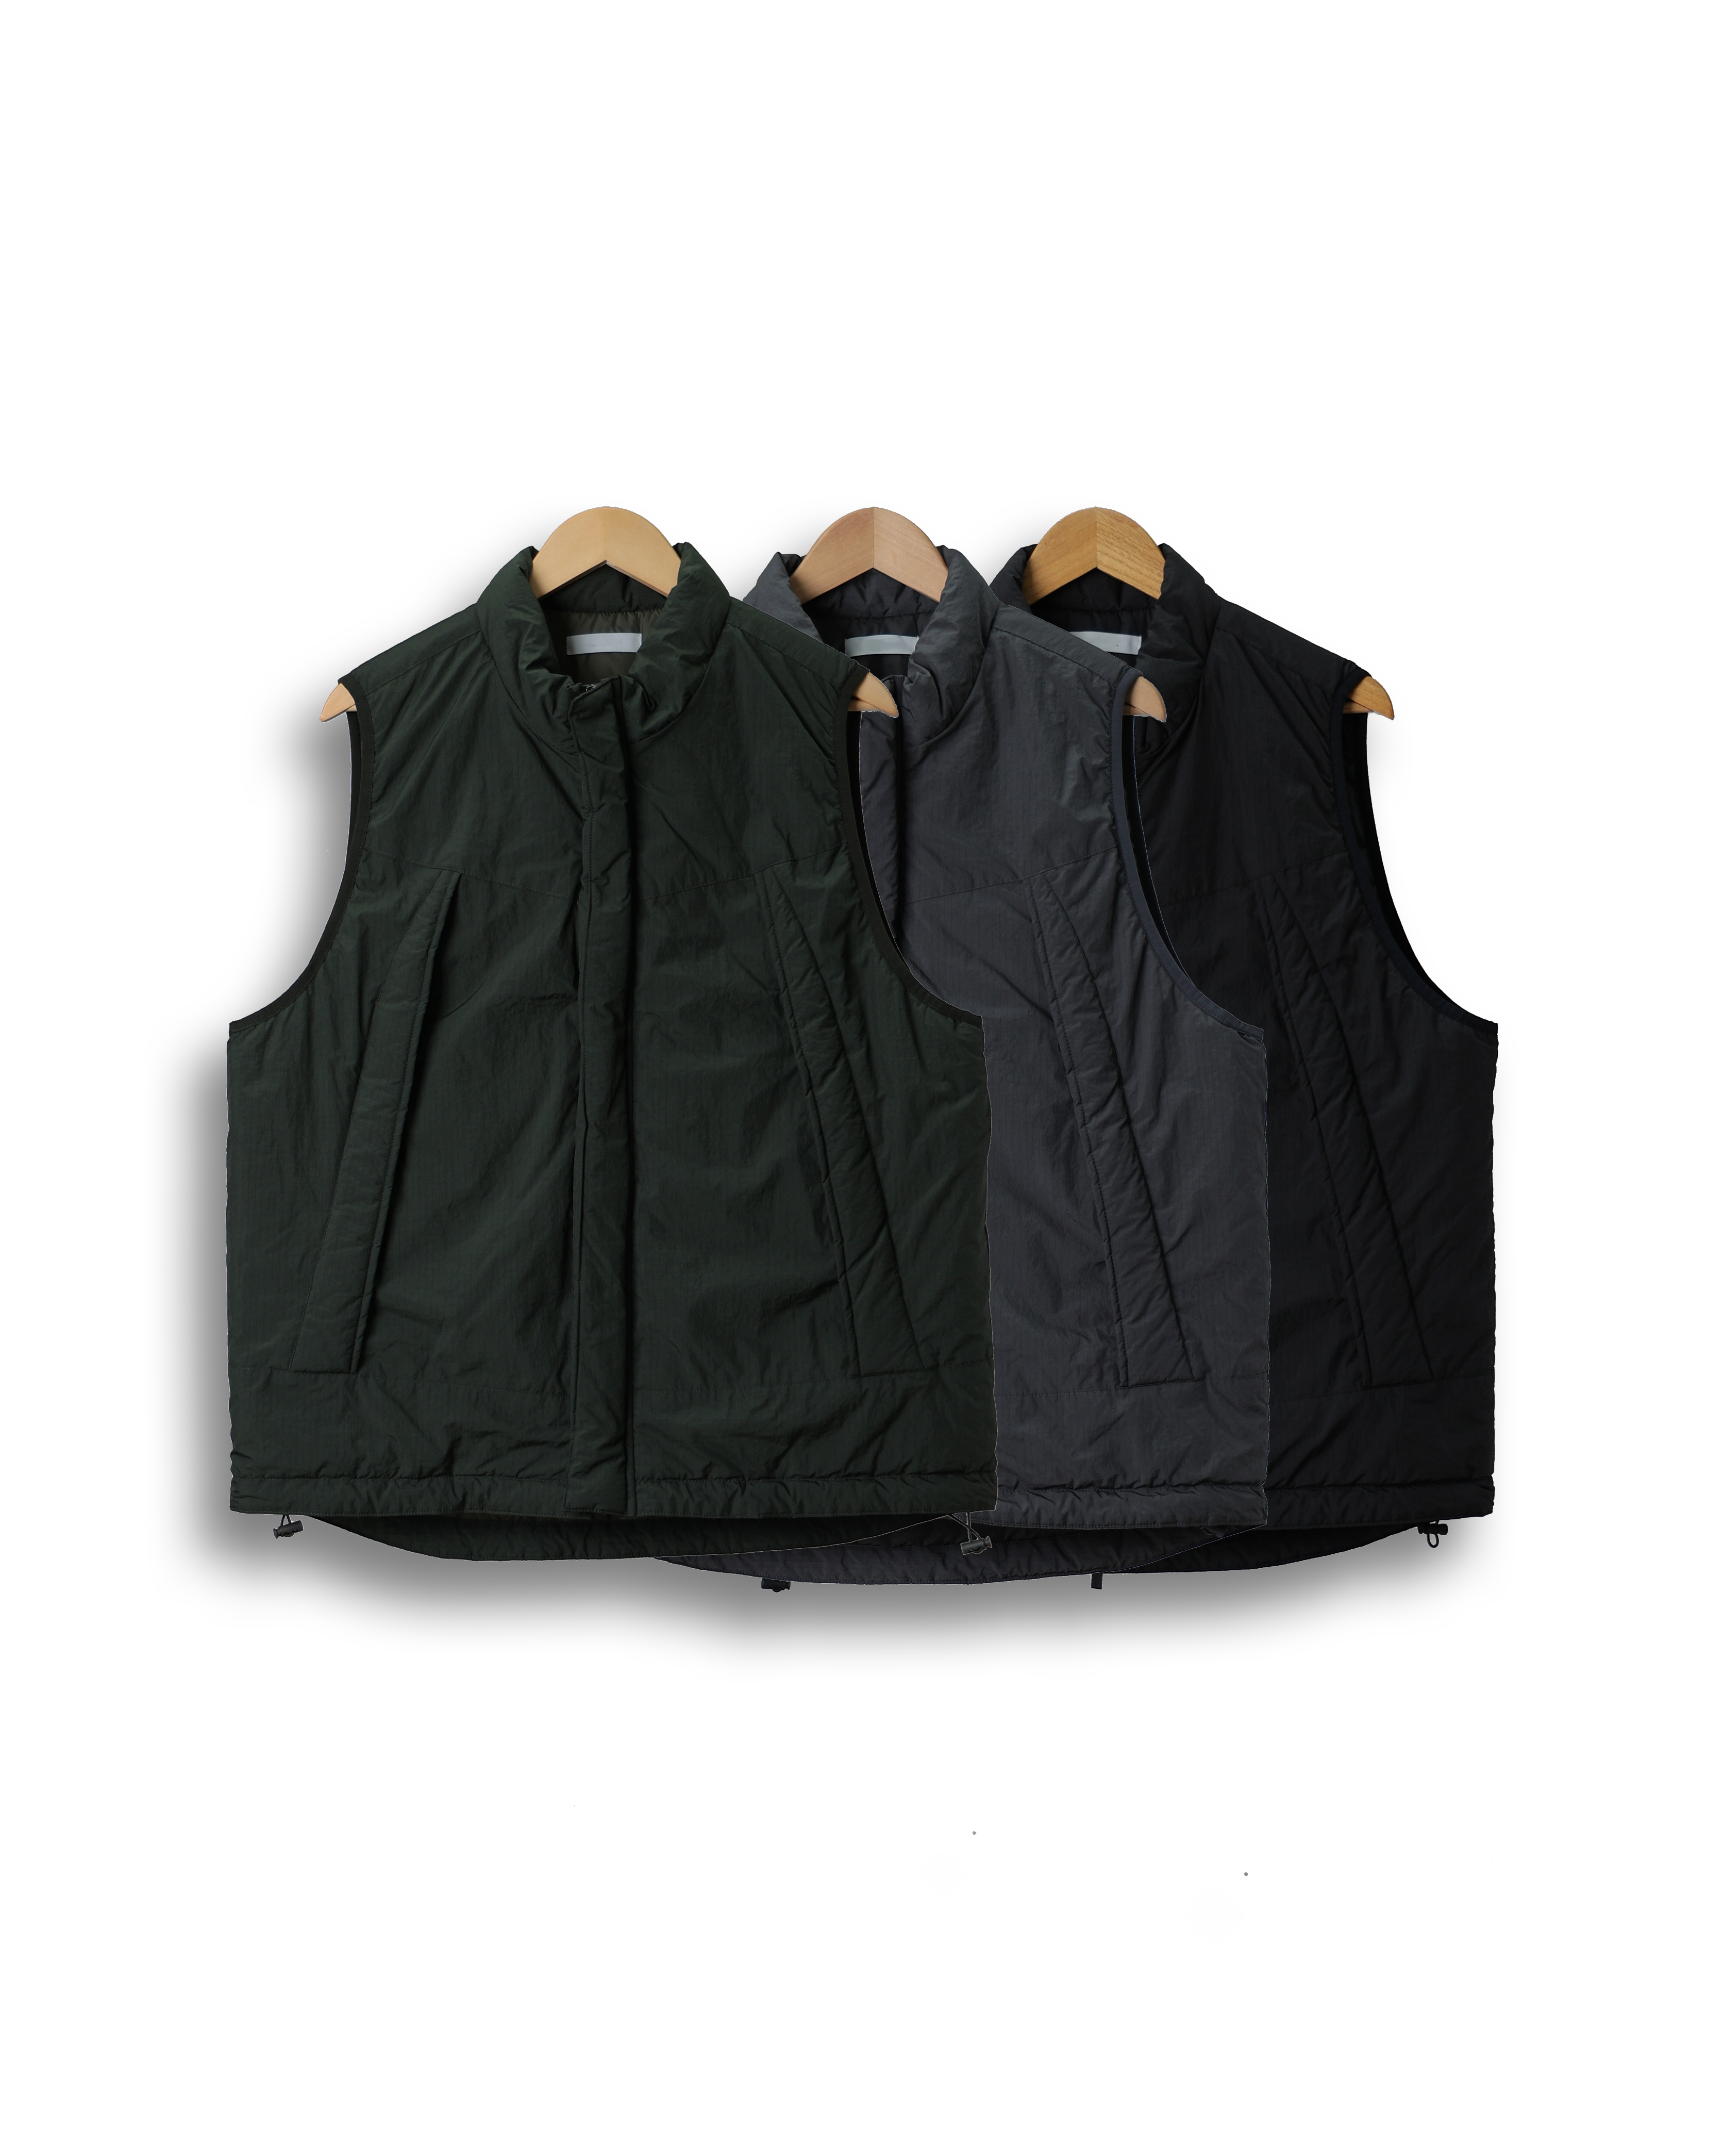 PECTOR Mil Pocket Cold Padded Vest (Black/Charcoal/Olive)